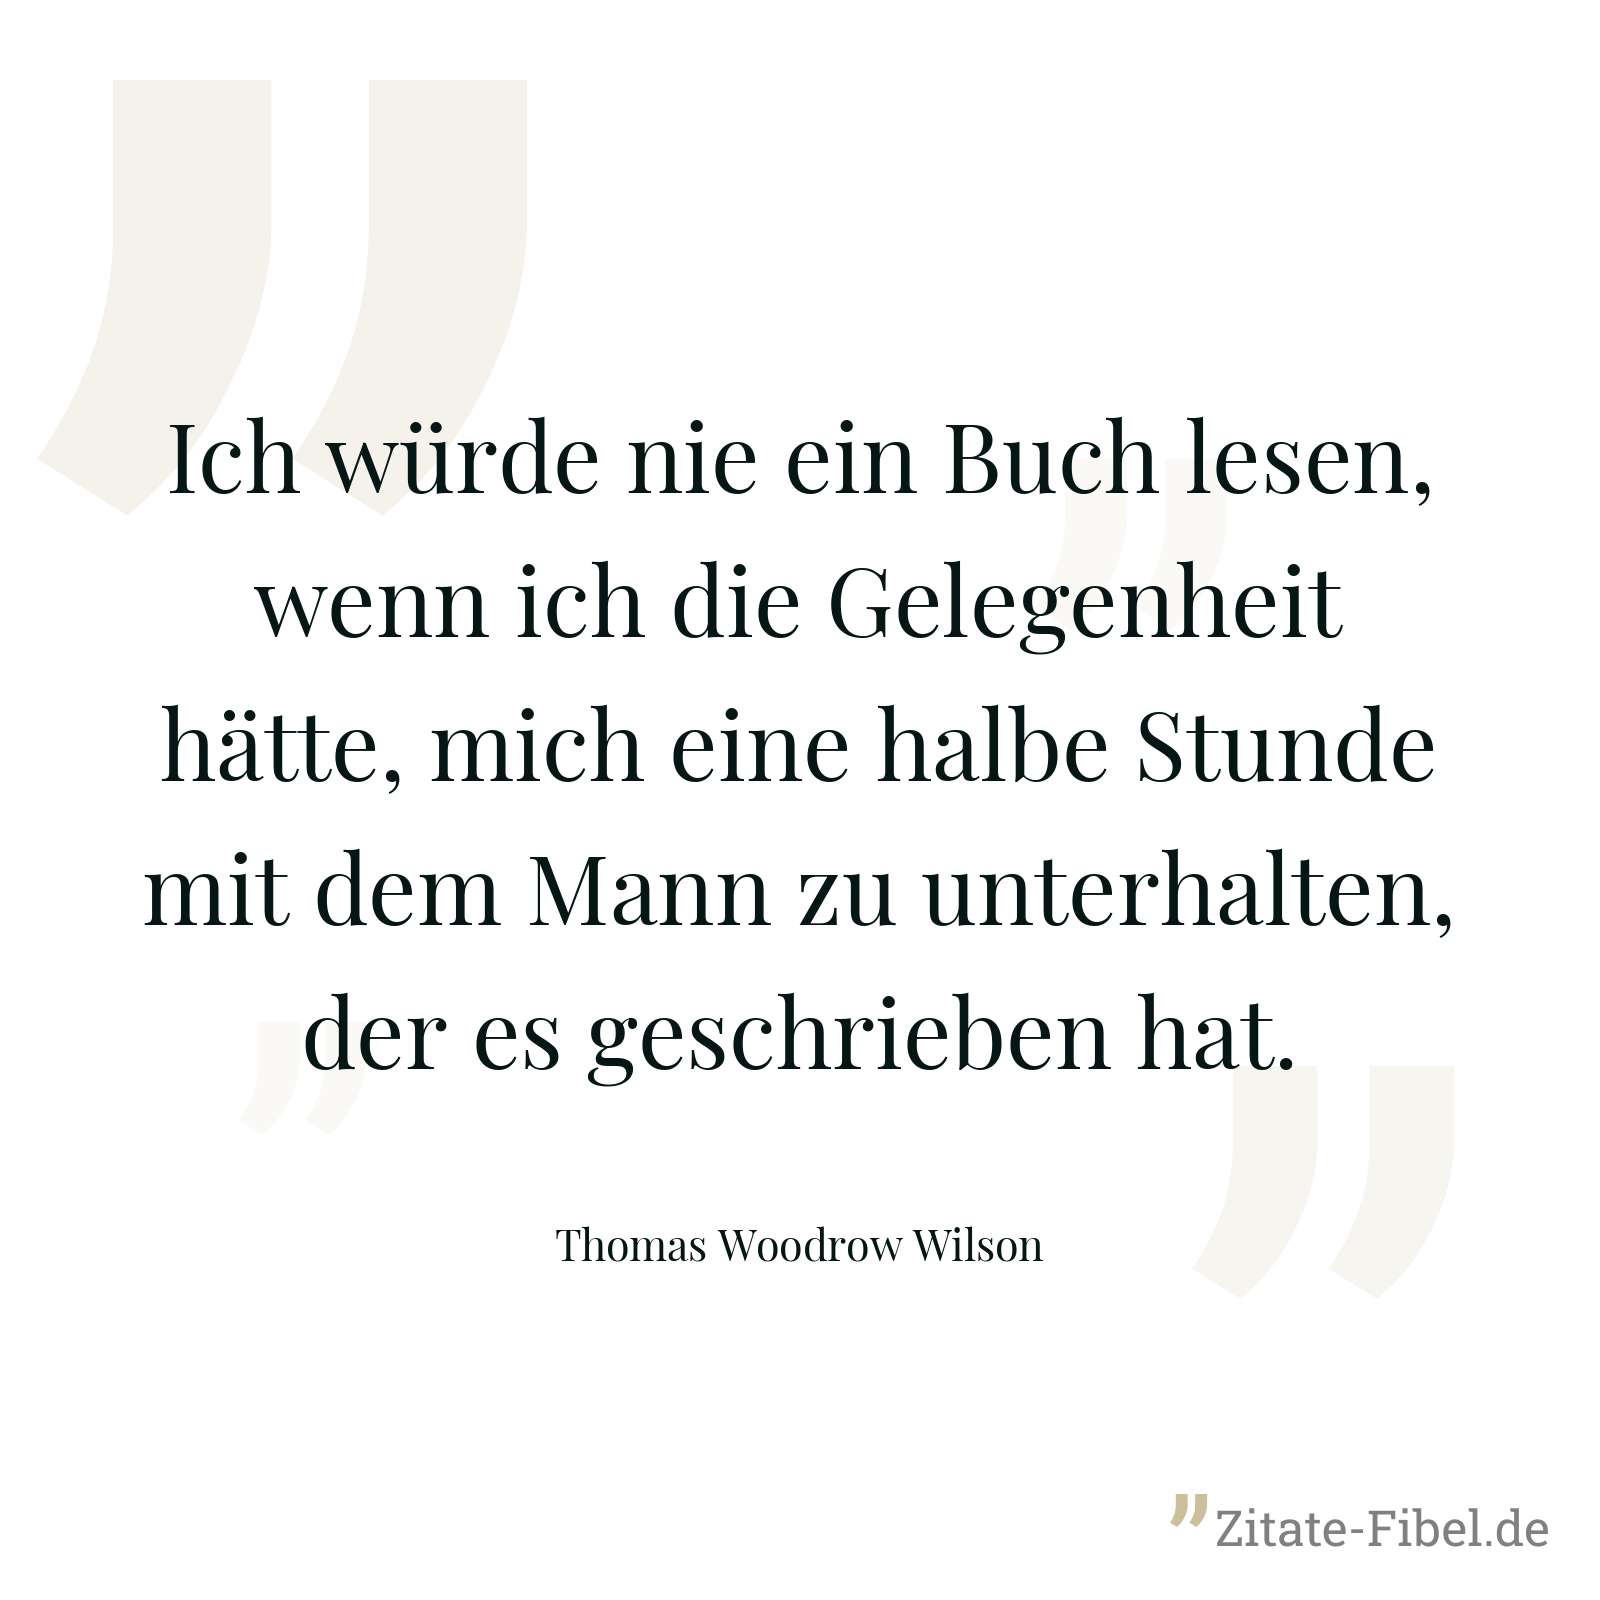 Ich würde nie ein Buch lesen, wenn ich die Gelegenheit hätte, mich eine halbe Stunde mit dem Mann zu unterhalten, der es geschrieben hat. - Thomas Woodrow Wilson